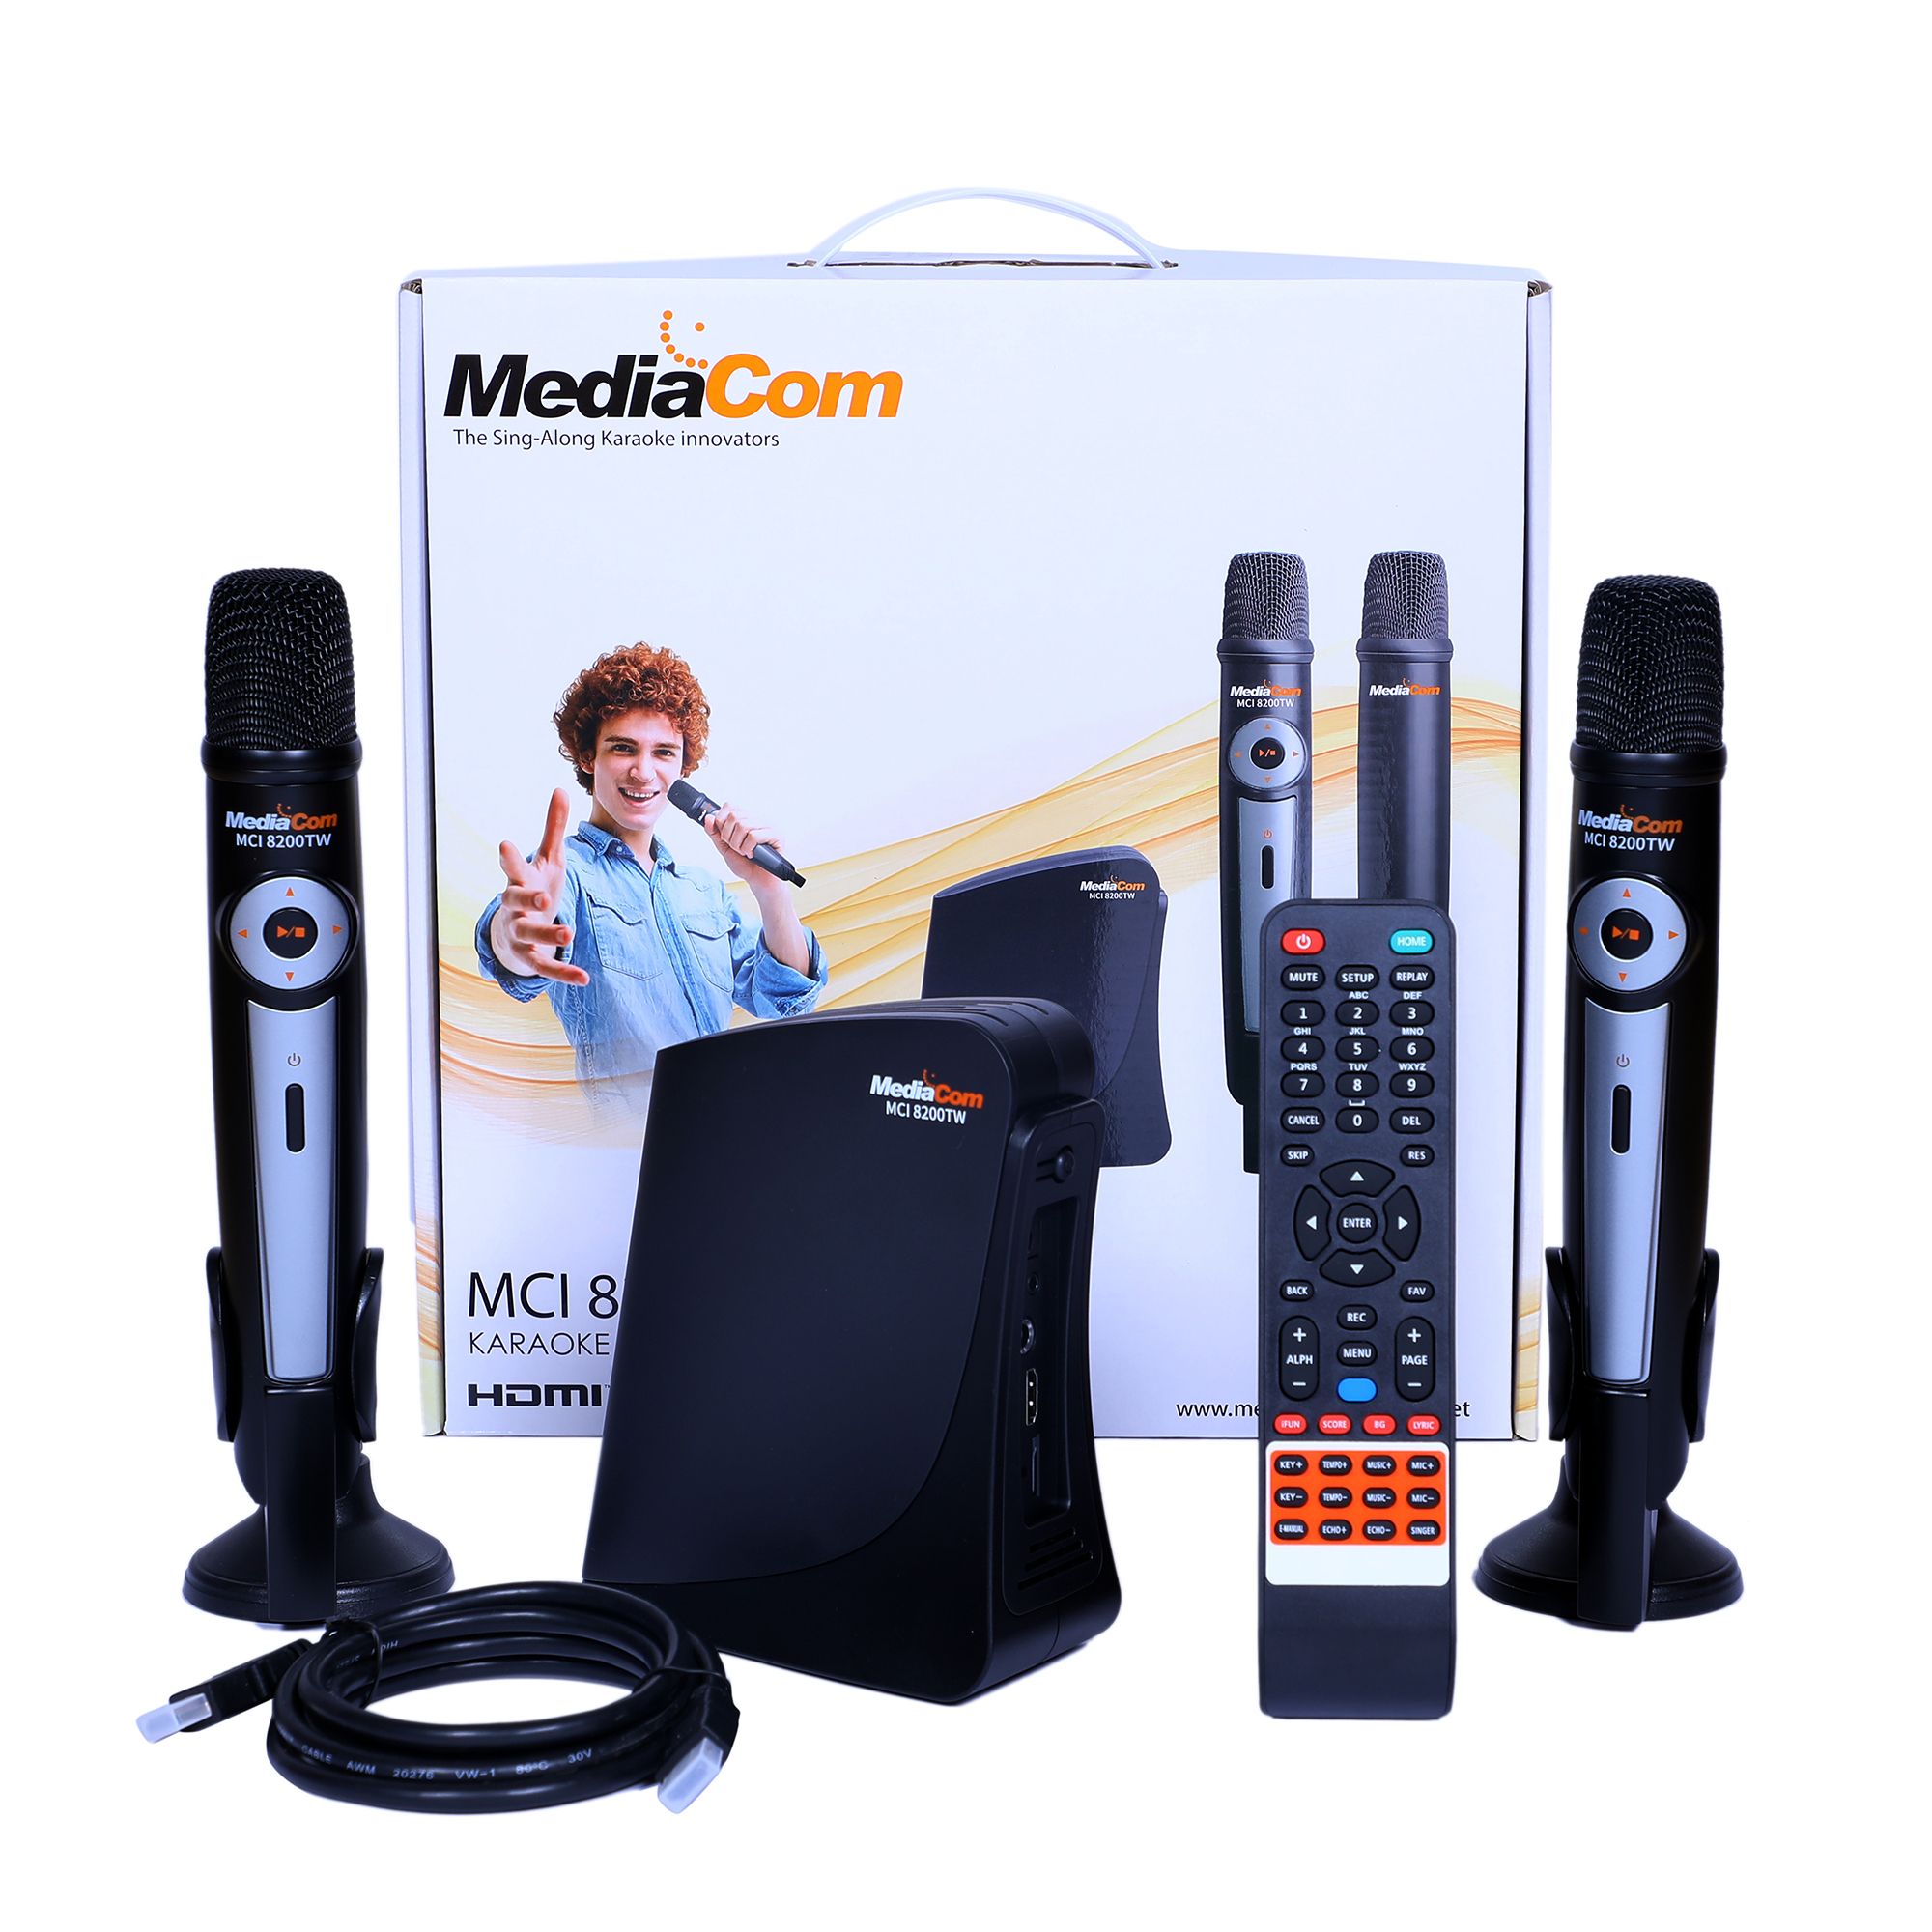 MCI 8200TW WIFI Enabled Karaoke